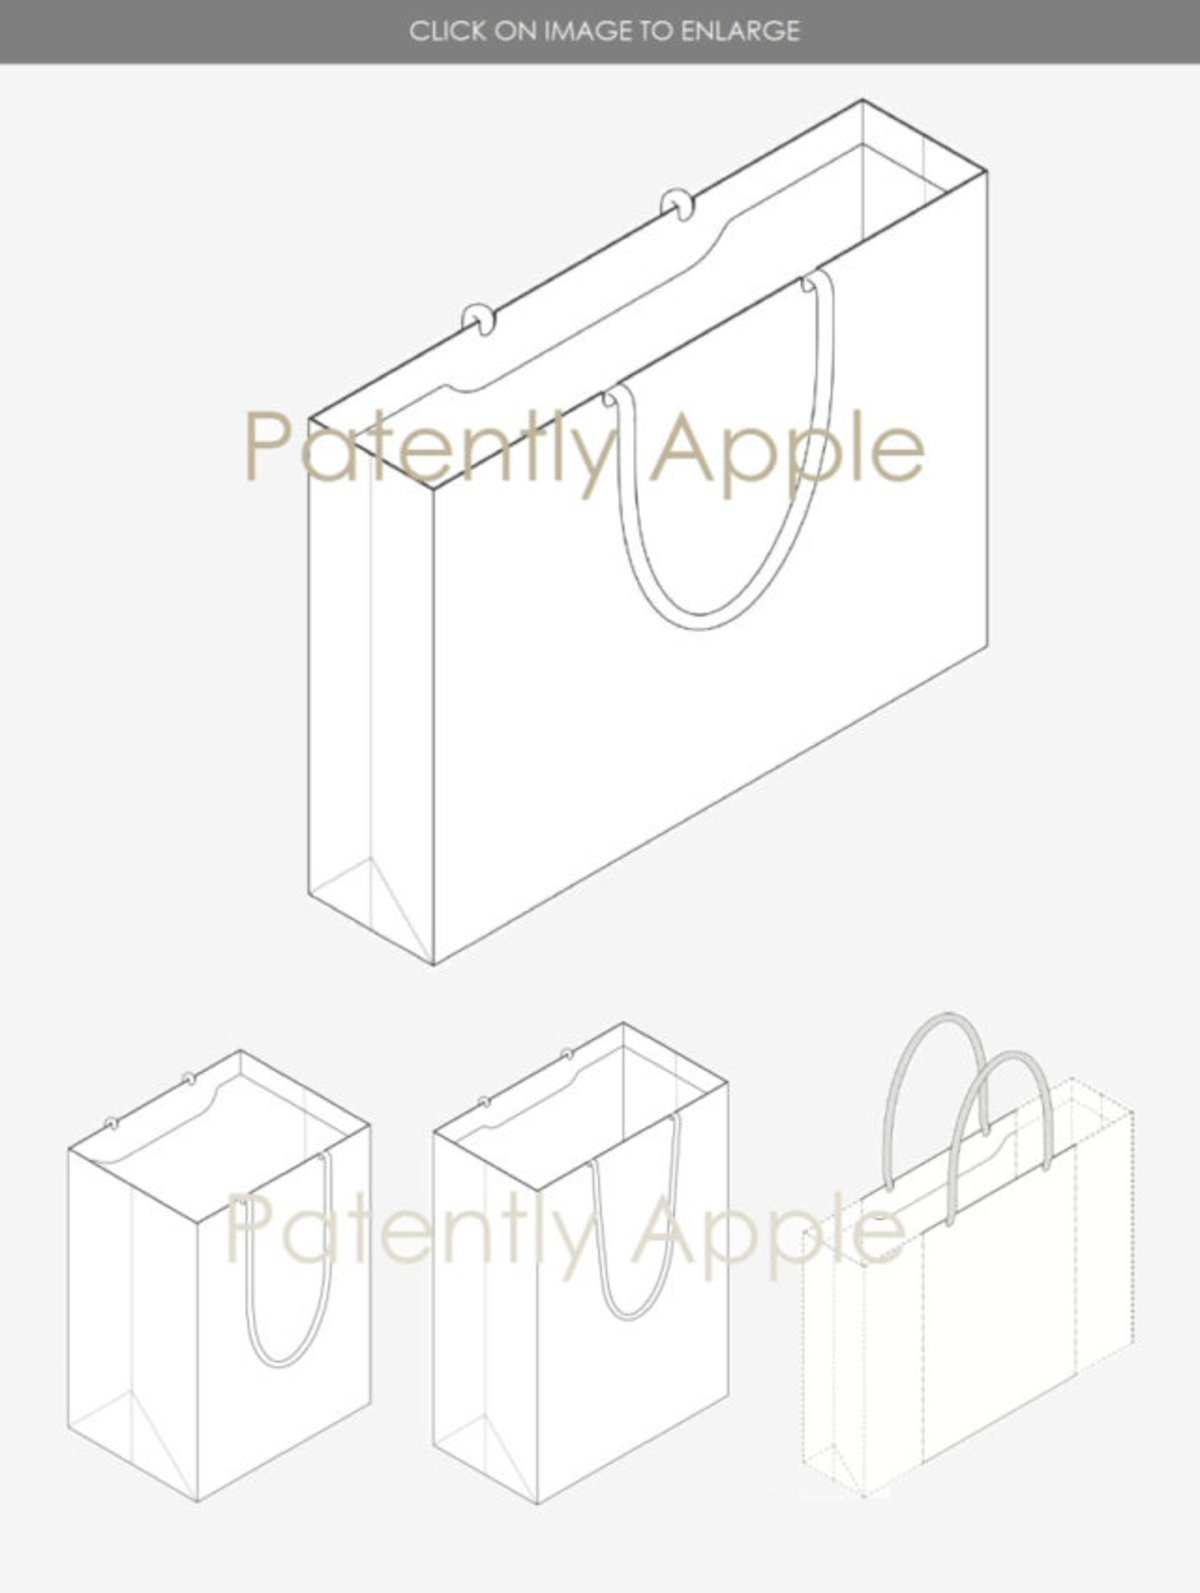 Apple ha patentado una... bolsa